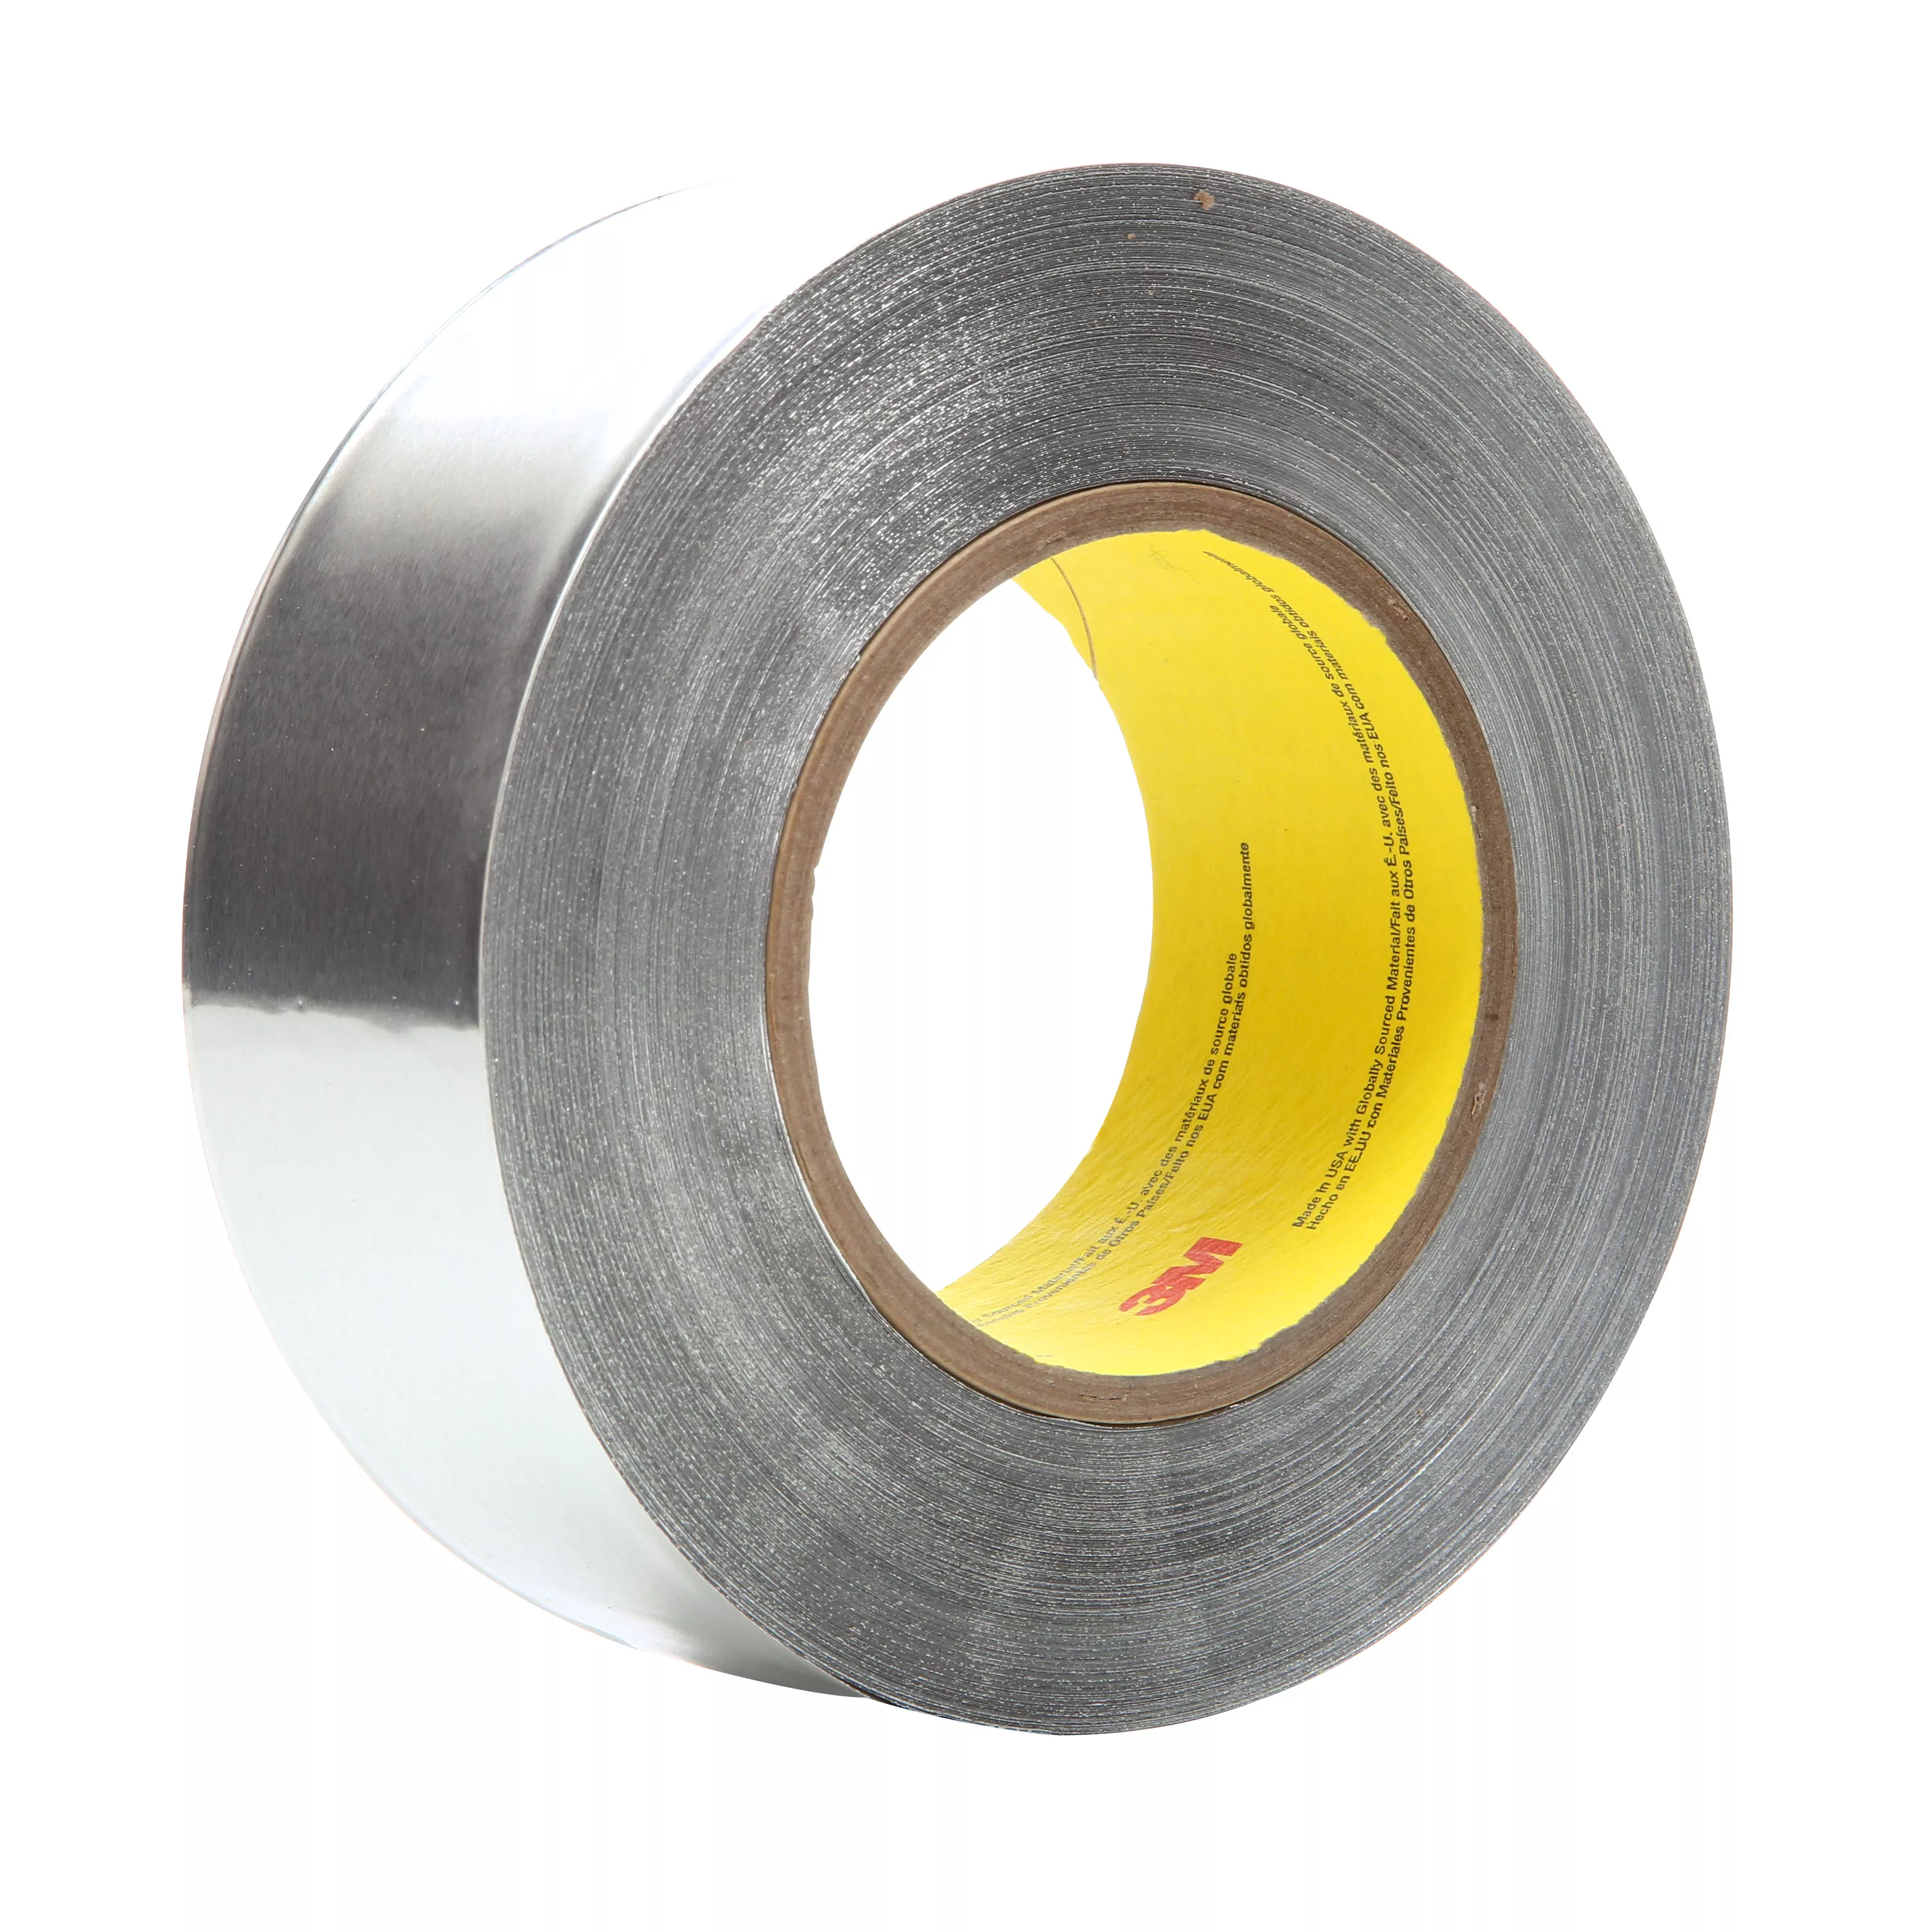 3M™ Heavy Duty Aluminum Foil Tape 438, Silver, 3 in x 60 yd, 7.2 mil, 16
Roll/Case